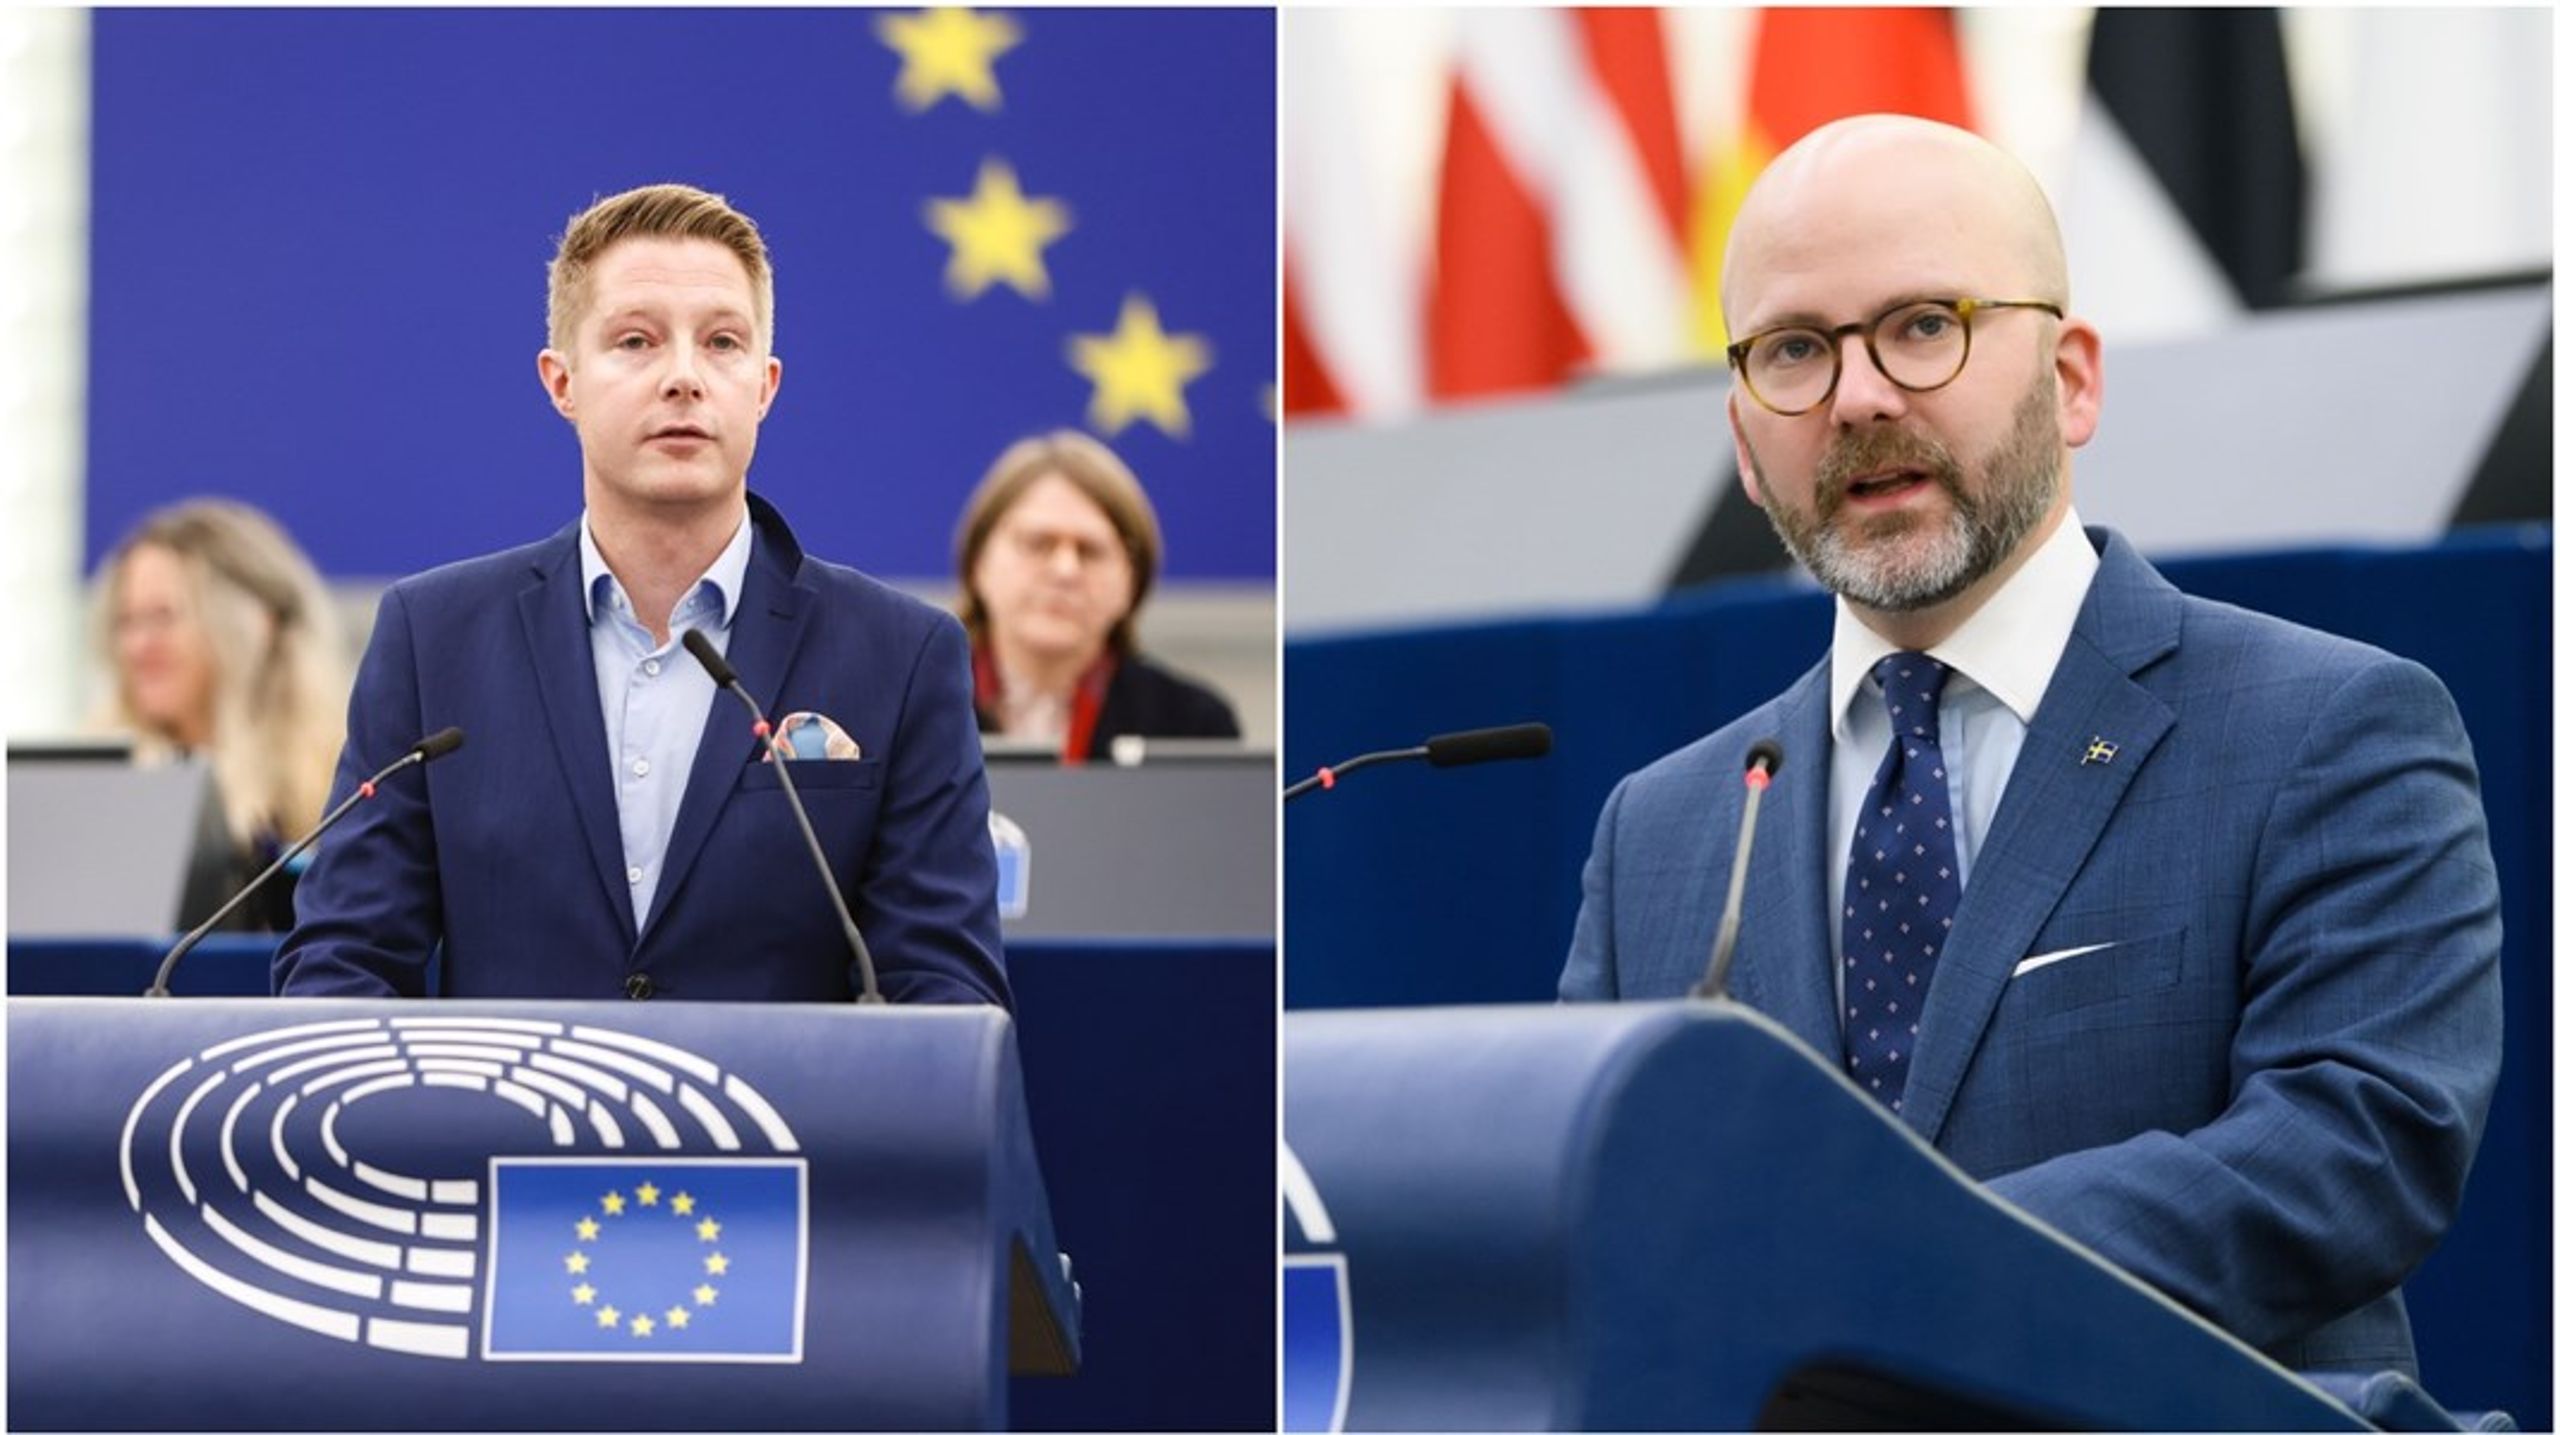 Johan Nissinen (SD) är fortfarande inne på sitt första år&nbsp;som Europaparlamentariker medan&nbsp;Charlie Weimers (SD) valdes in i Europaparlamentet 2019.&nbsp;